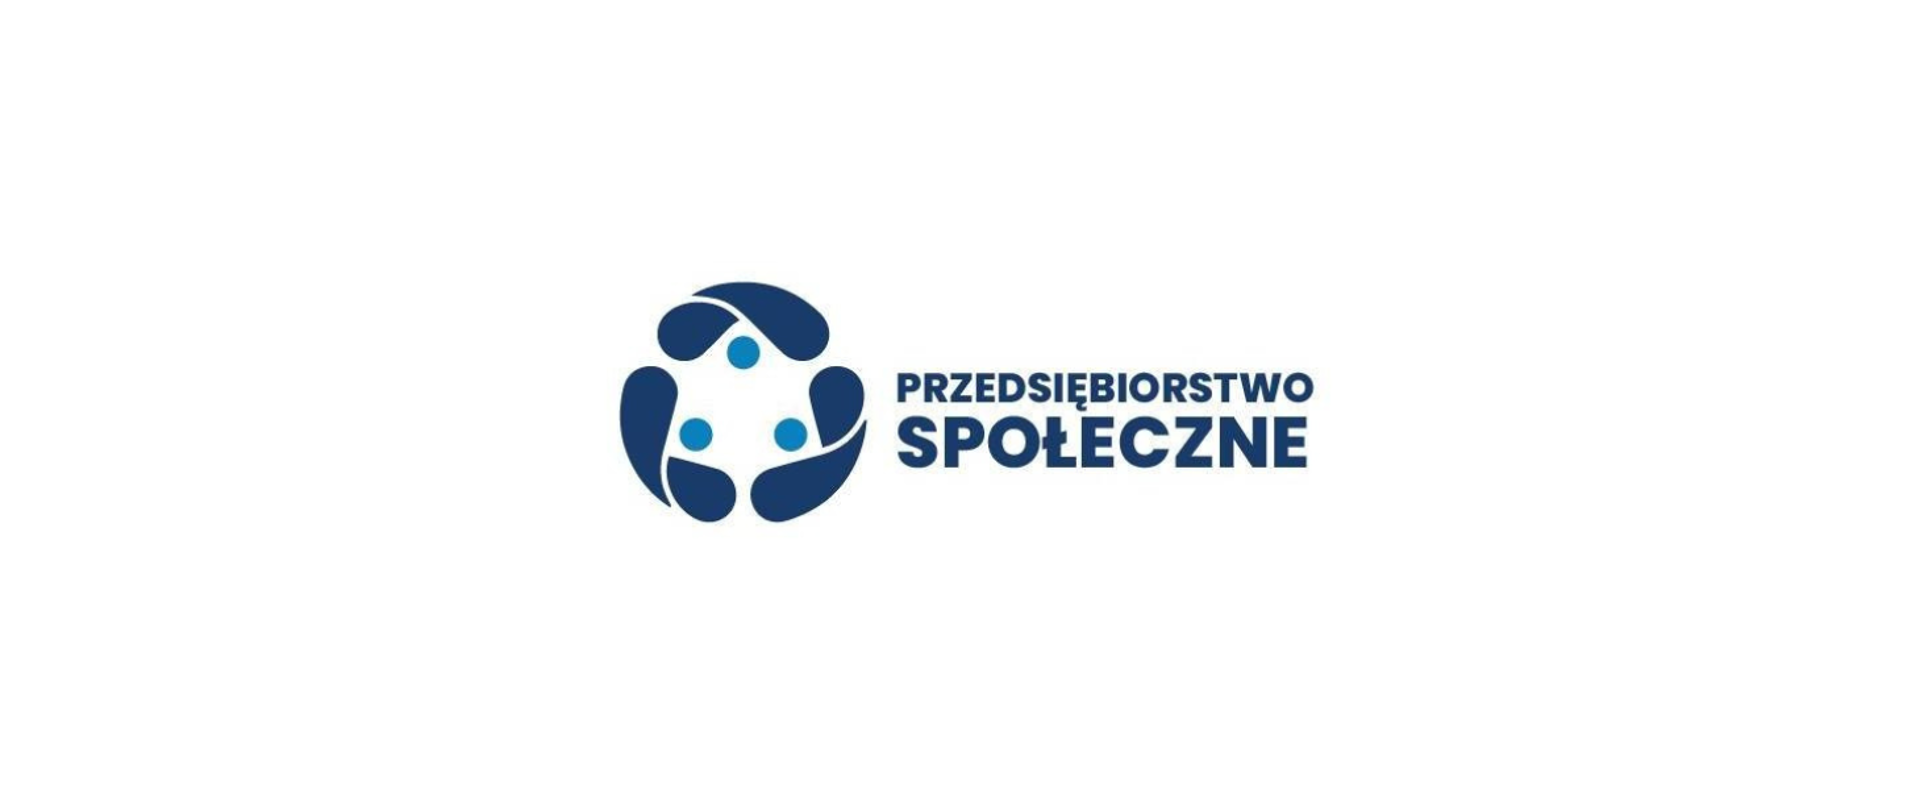 22 mln zł dla przedsiębiorstw społecznych